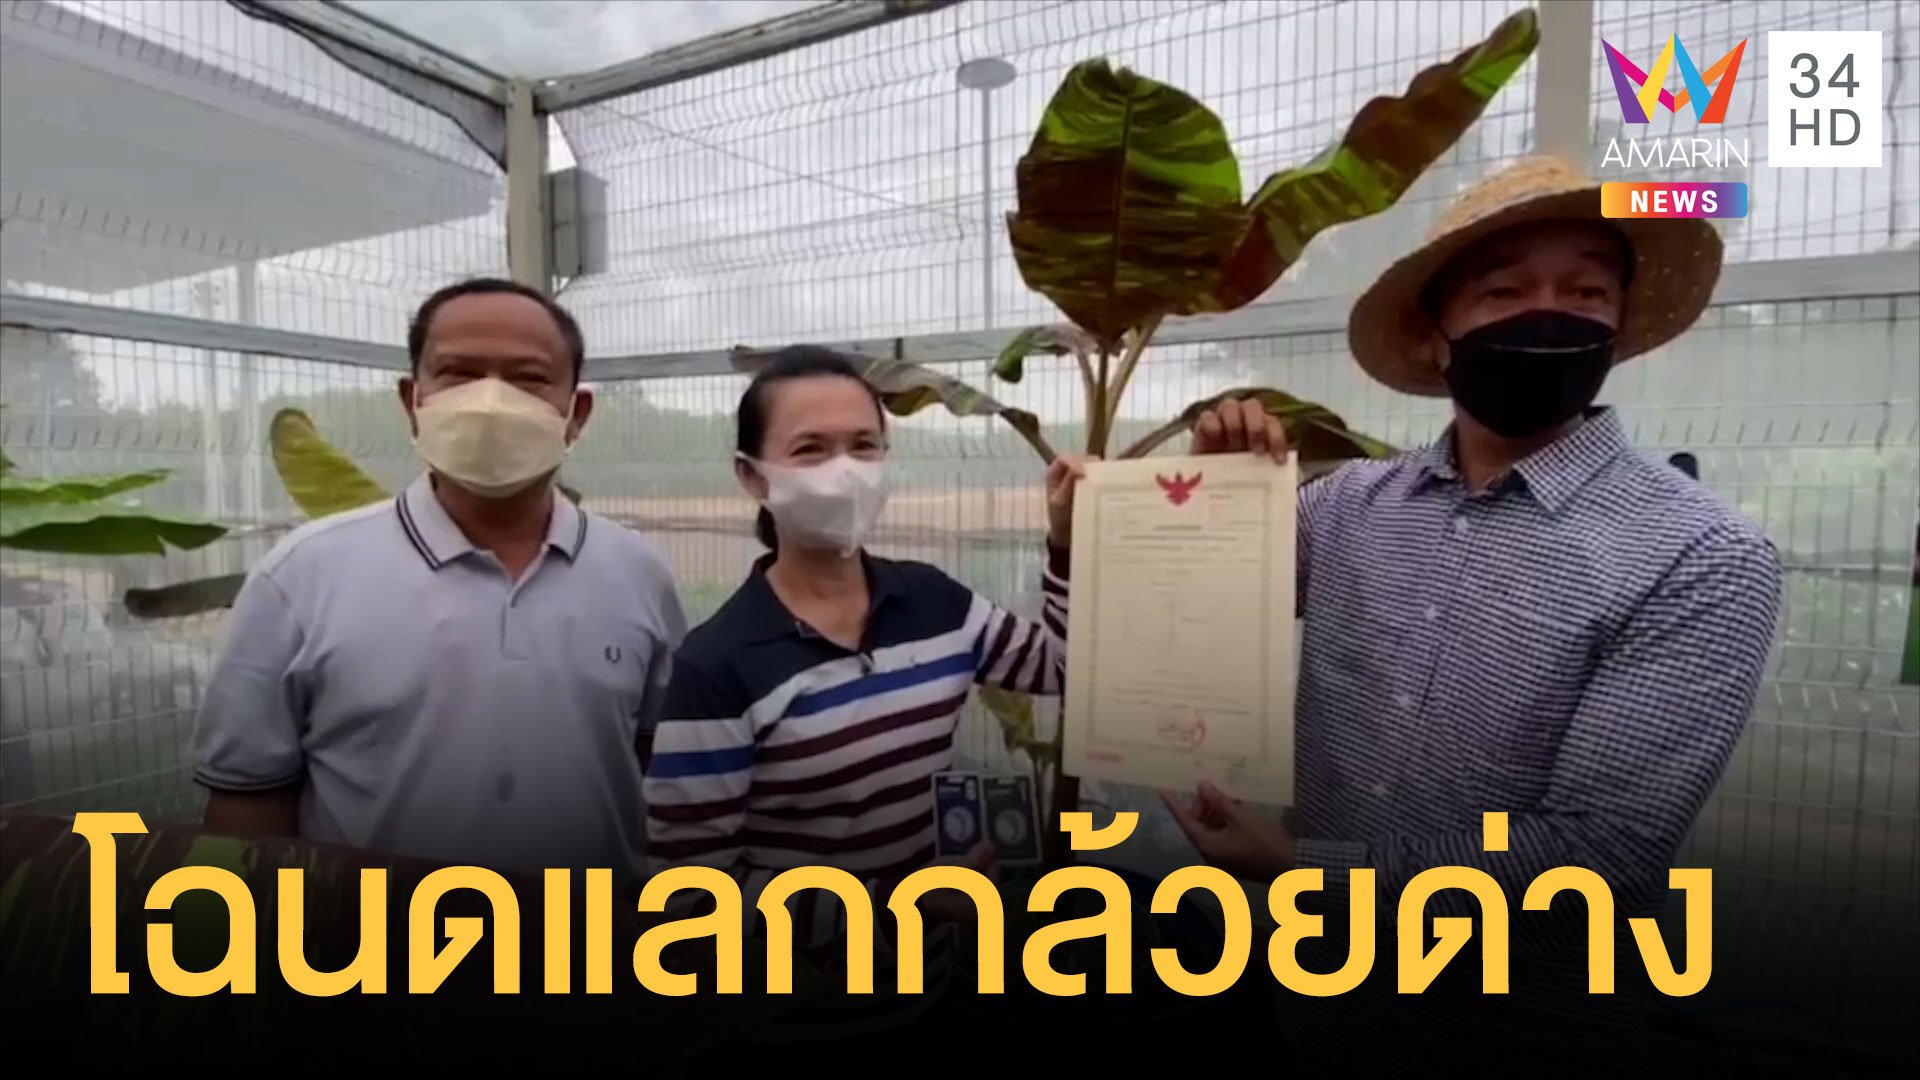 หิ้วโฉนดคอนโดหัวหิน 3 ล้าน แลกกล้วยด่างแดงอินโด | ข่าวอรุณอมรินทร์ | 13 ก.พ. 65 | AMARIN TVHD34